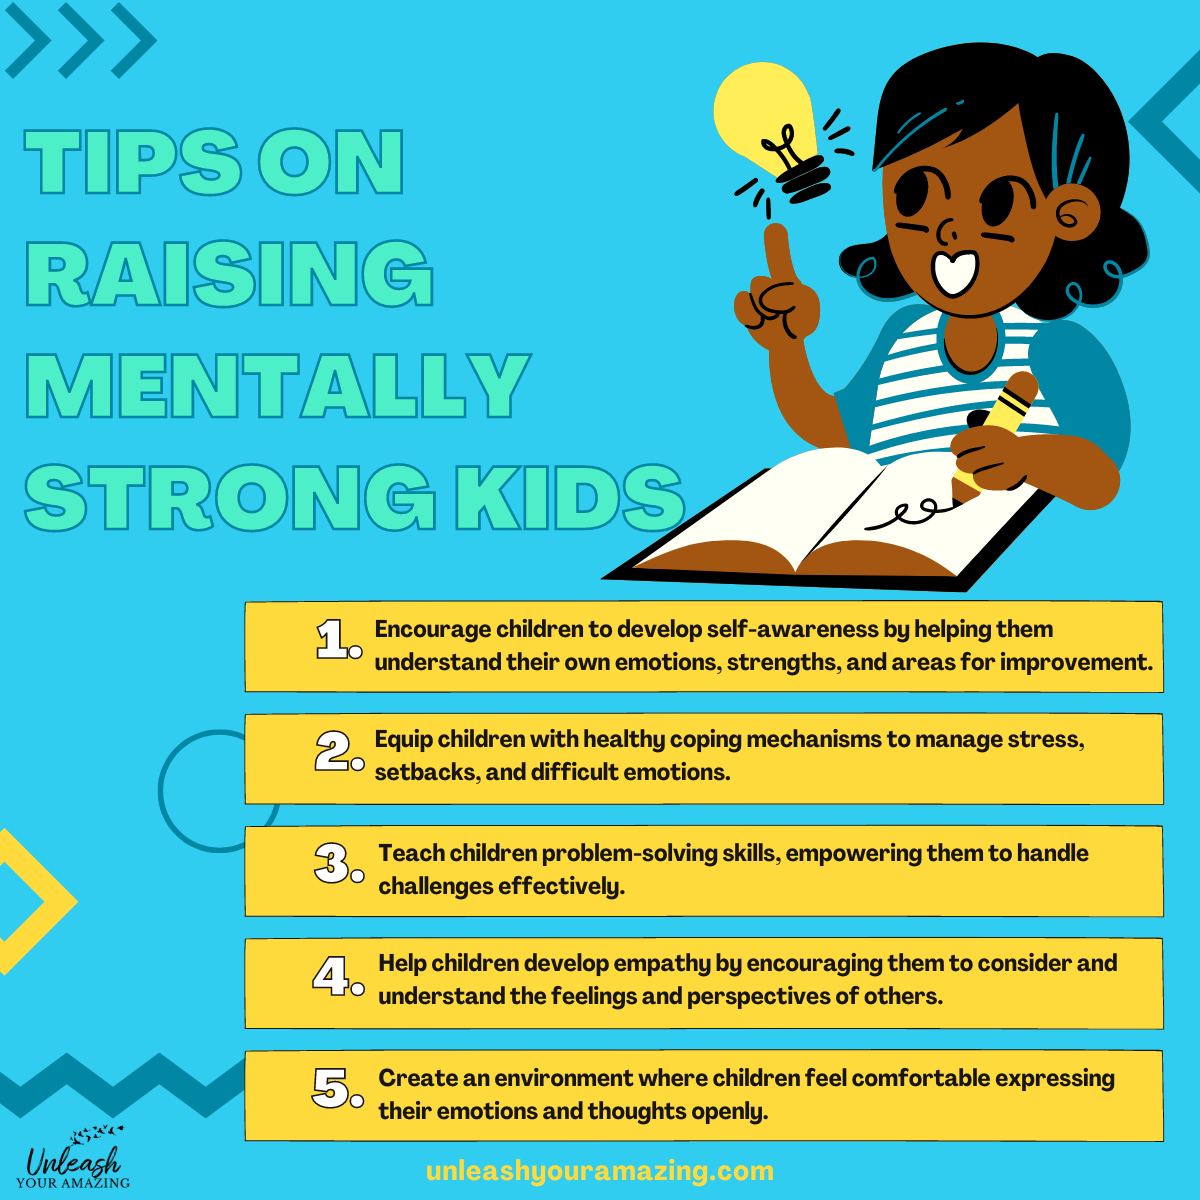 Tips on Raising Mentally Strong Kids